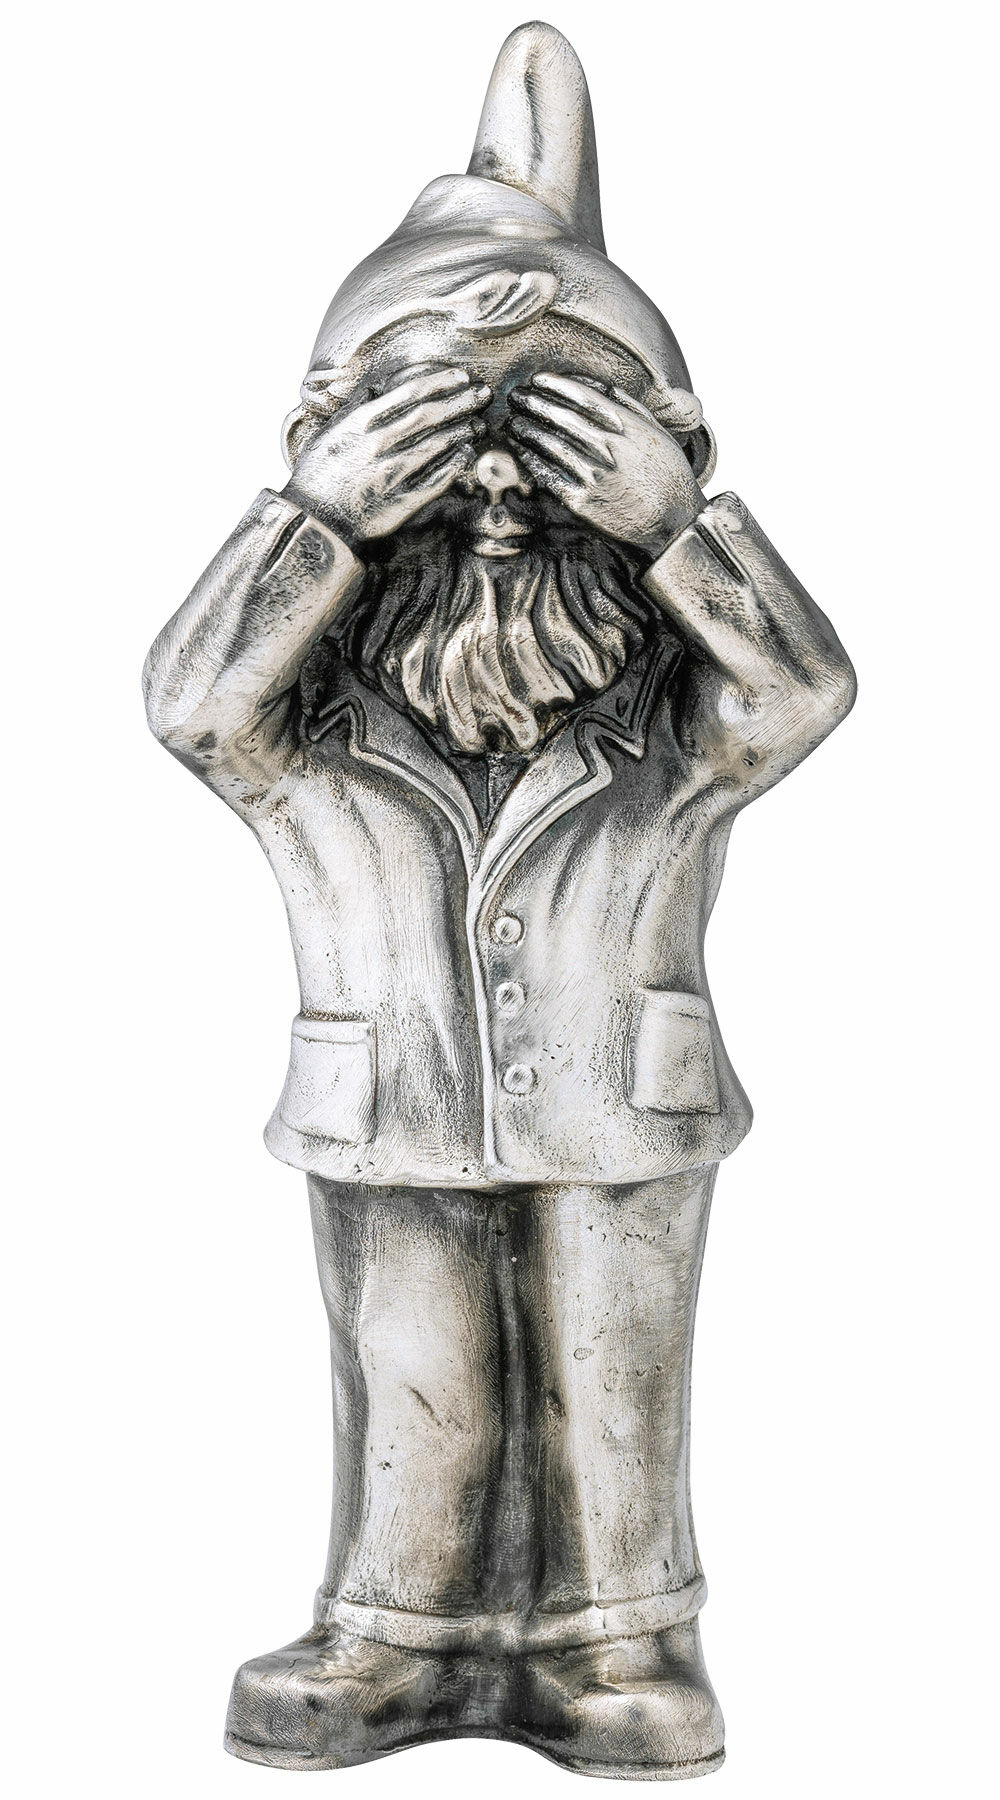 Skulptur "Geheimnisträger - Nichts sehen", Version versilbert von Ottmar Hörl